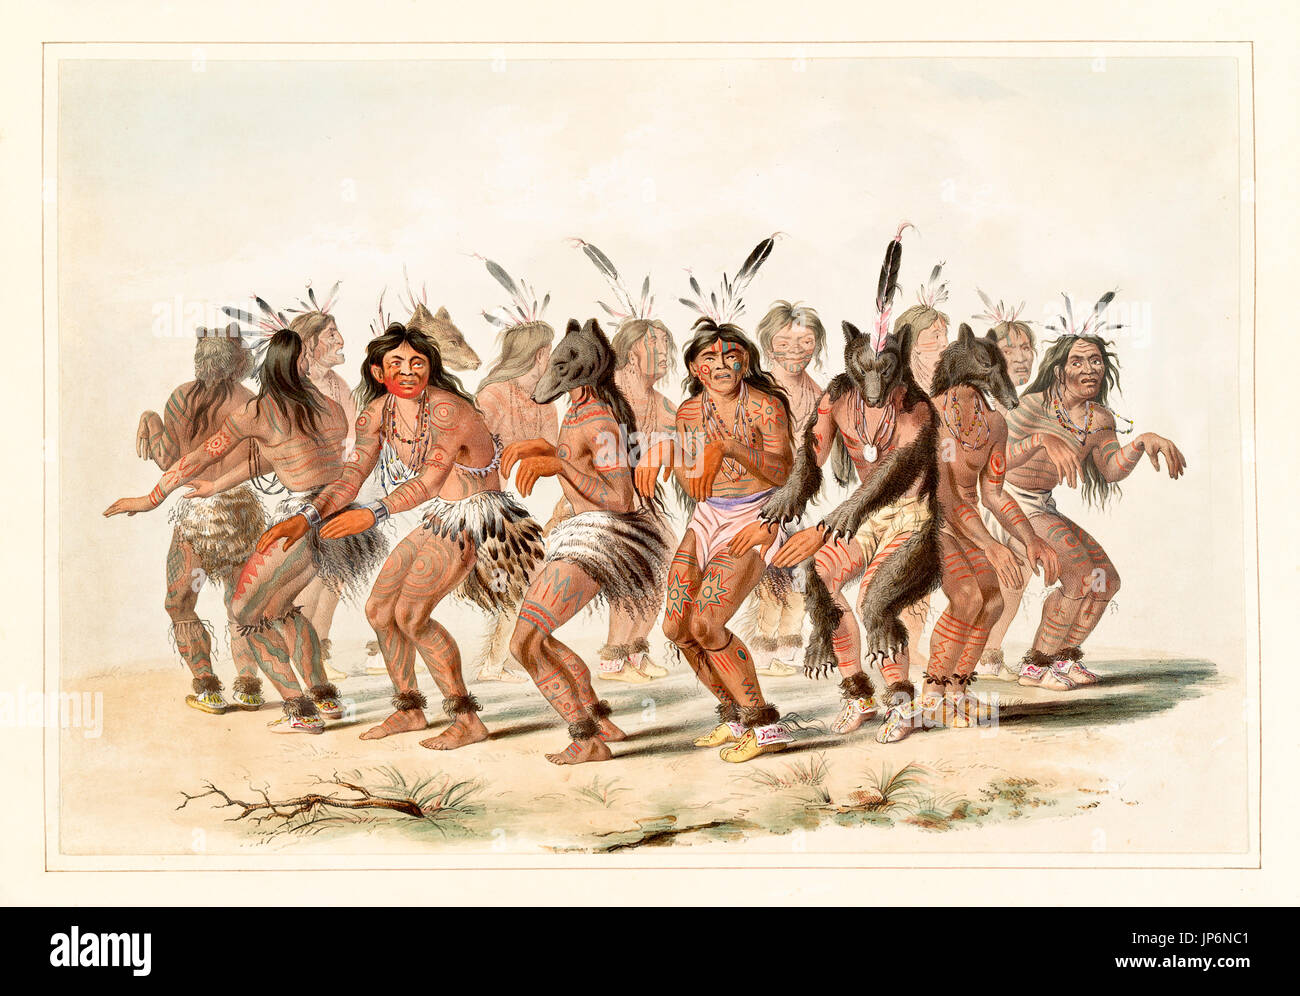 Danza del oso. Por G. Catlin, publ. en Catlin's North American Indian Portfolio..., Ackerman, Nueva York, 1845 Foto de stock